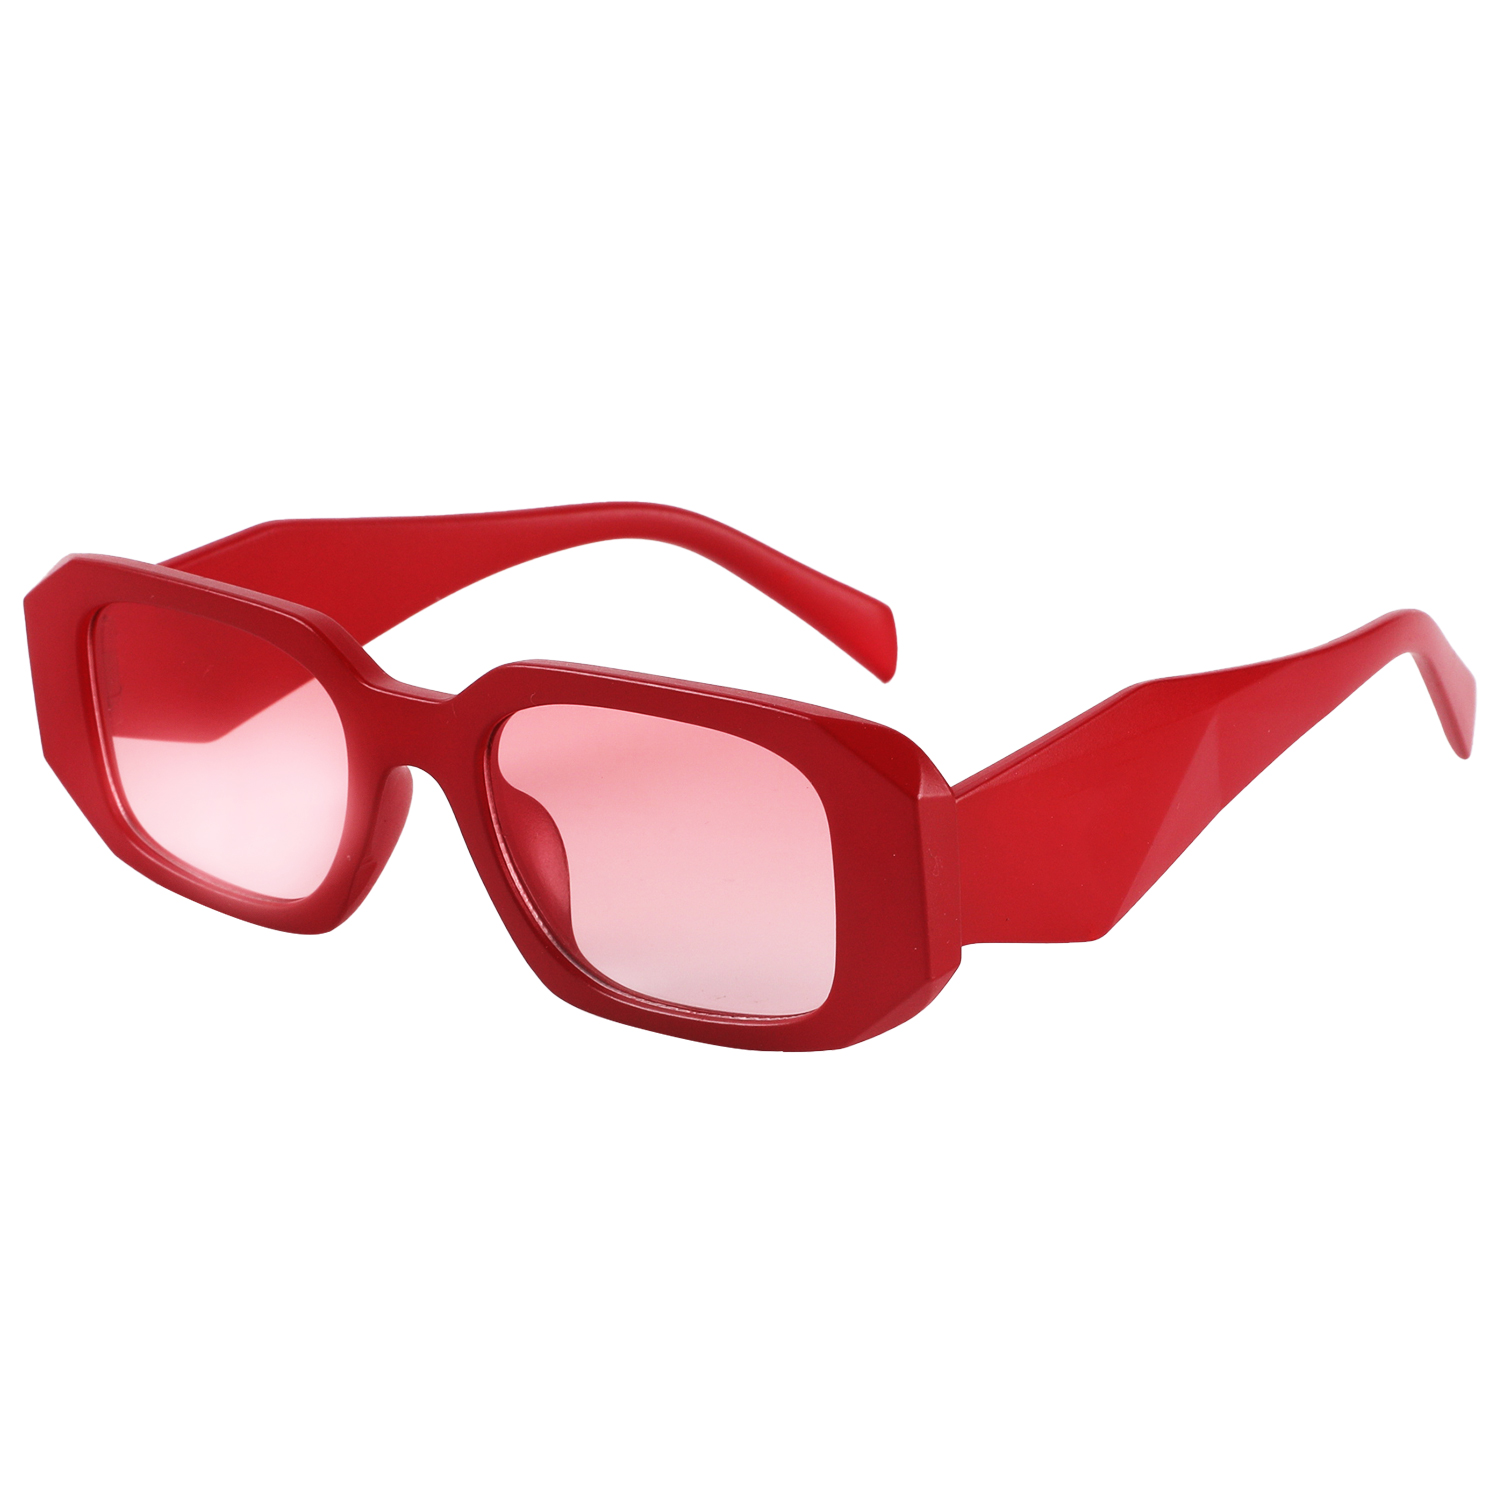 2023年新款时尚太阳眼镜 订制 礼品促销 防紫外线太阳眼镜JB2314